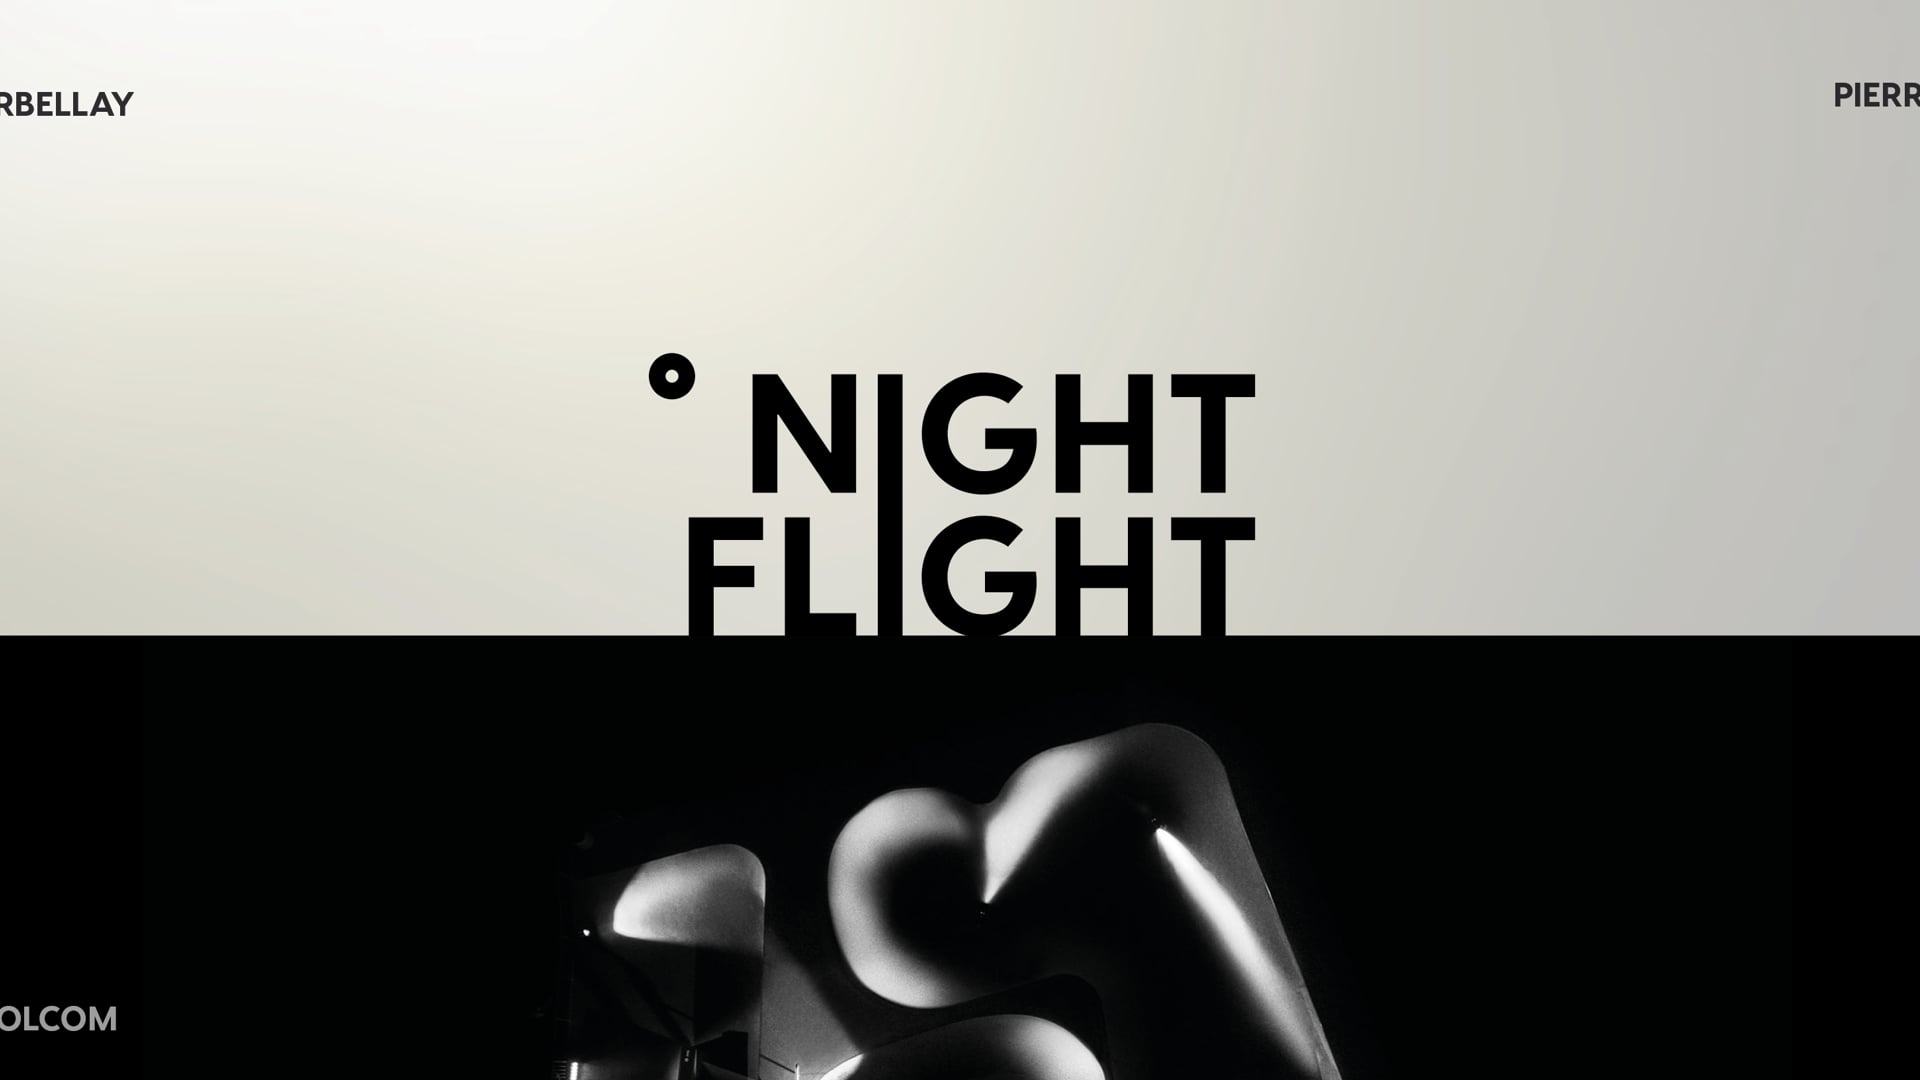 NIGHT FLIGHT